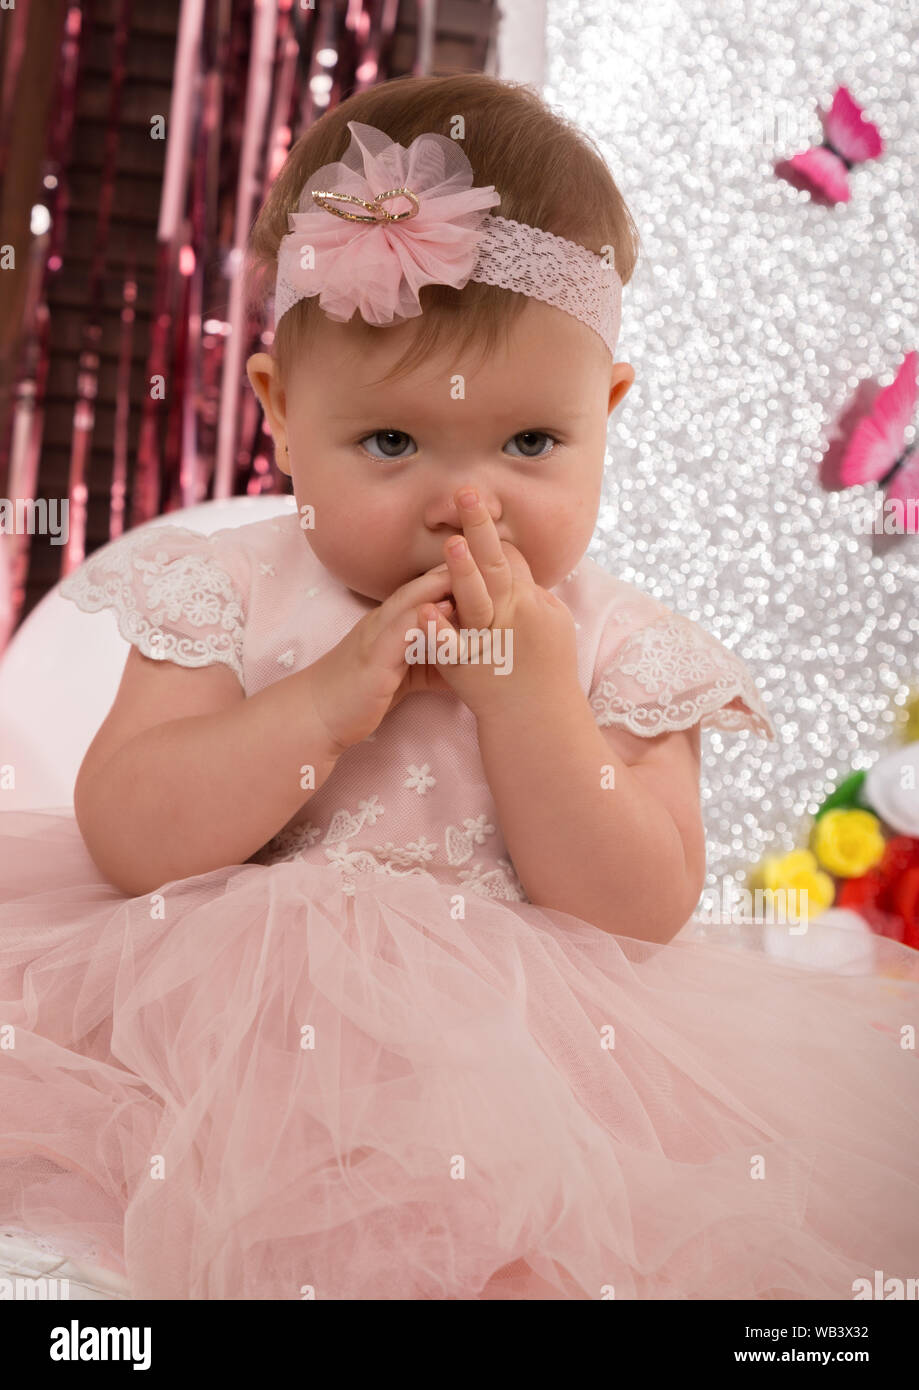 Schöne modische kleine Baby in rosa Kleid. Kleine Prinzessin posiert wie  eine Puppe Stockfotografie - Alamy